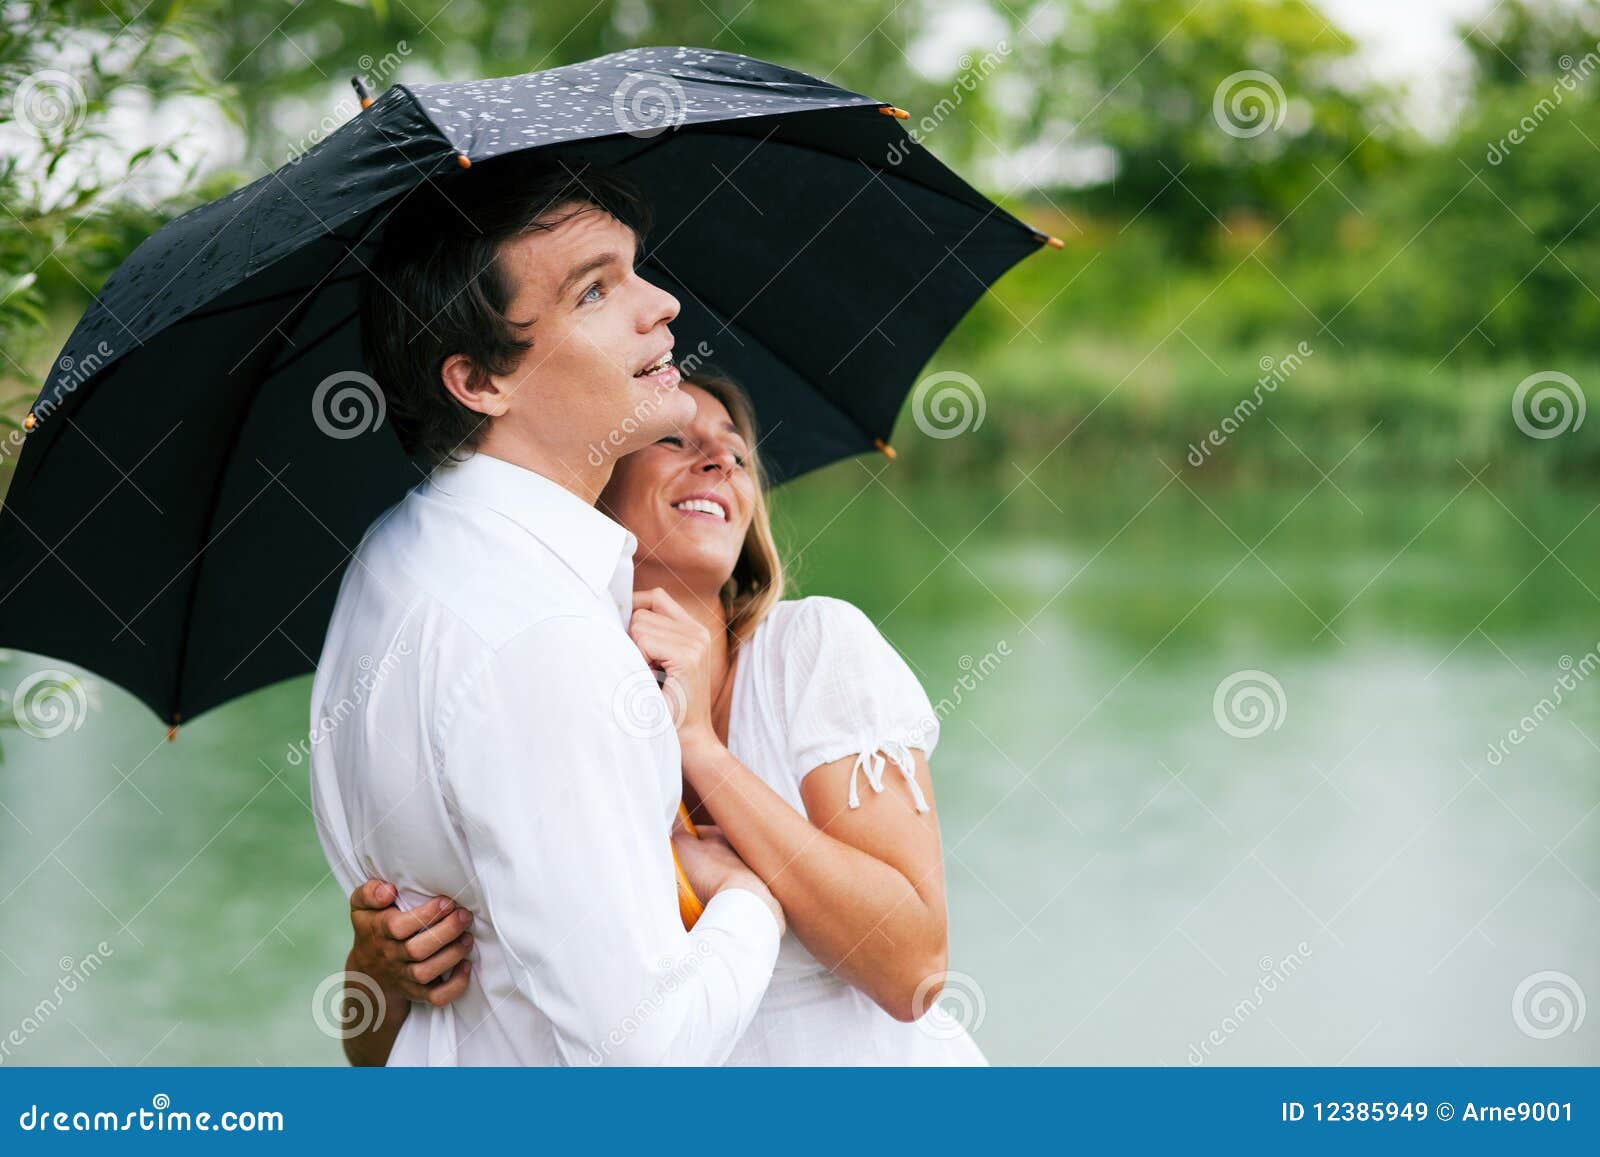 Bescherming tegen de de zomerregen. Paar (man en vrouw) bij een meer in de zomerregen met een paraplu, beschut hij haar van de dalingen, die zijn meisje in zijn wapens houden